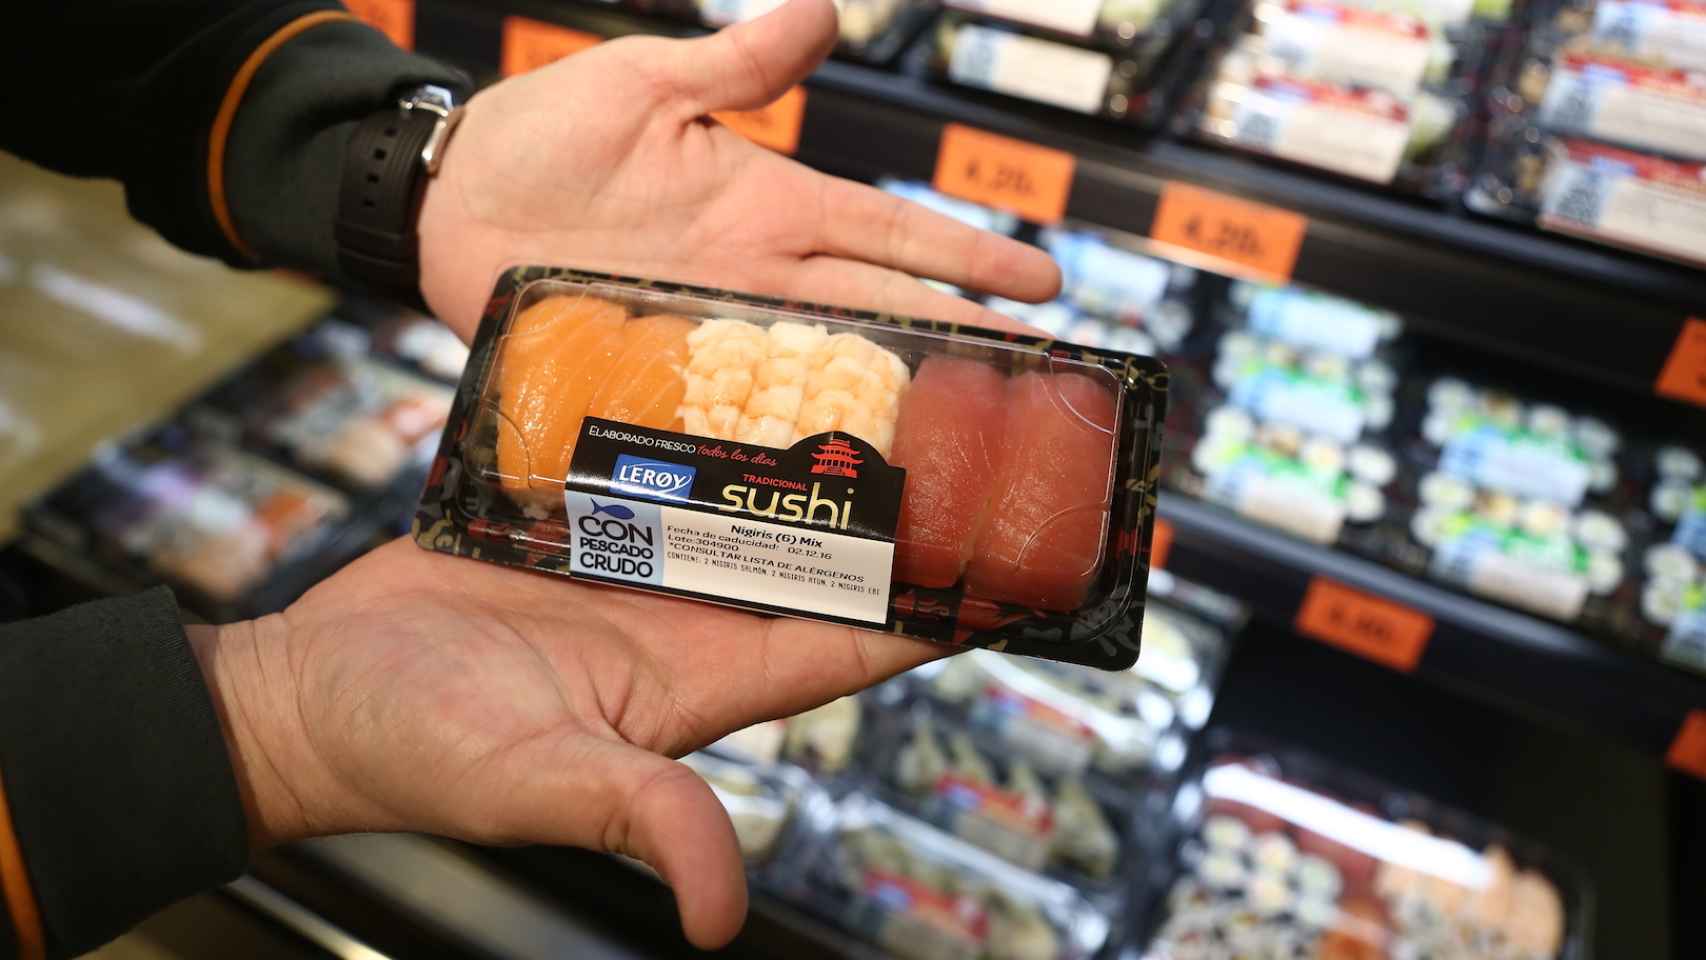 Una de las bandejas de sushi fabricadas por Leroy que comercializa Mercadona.